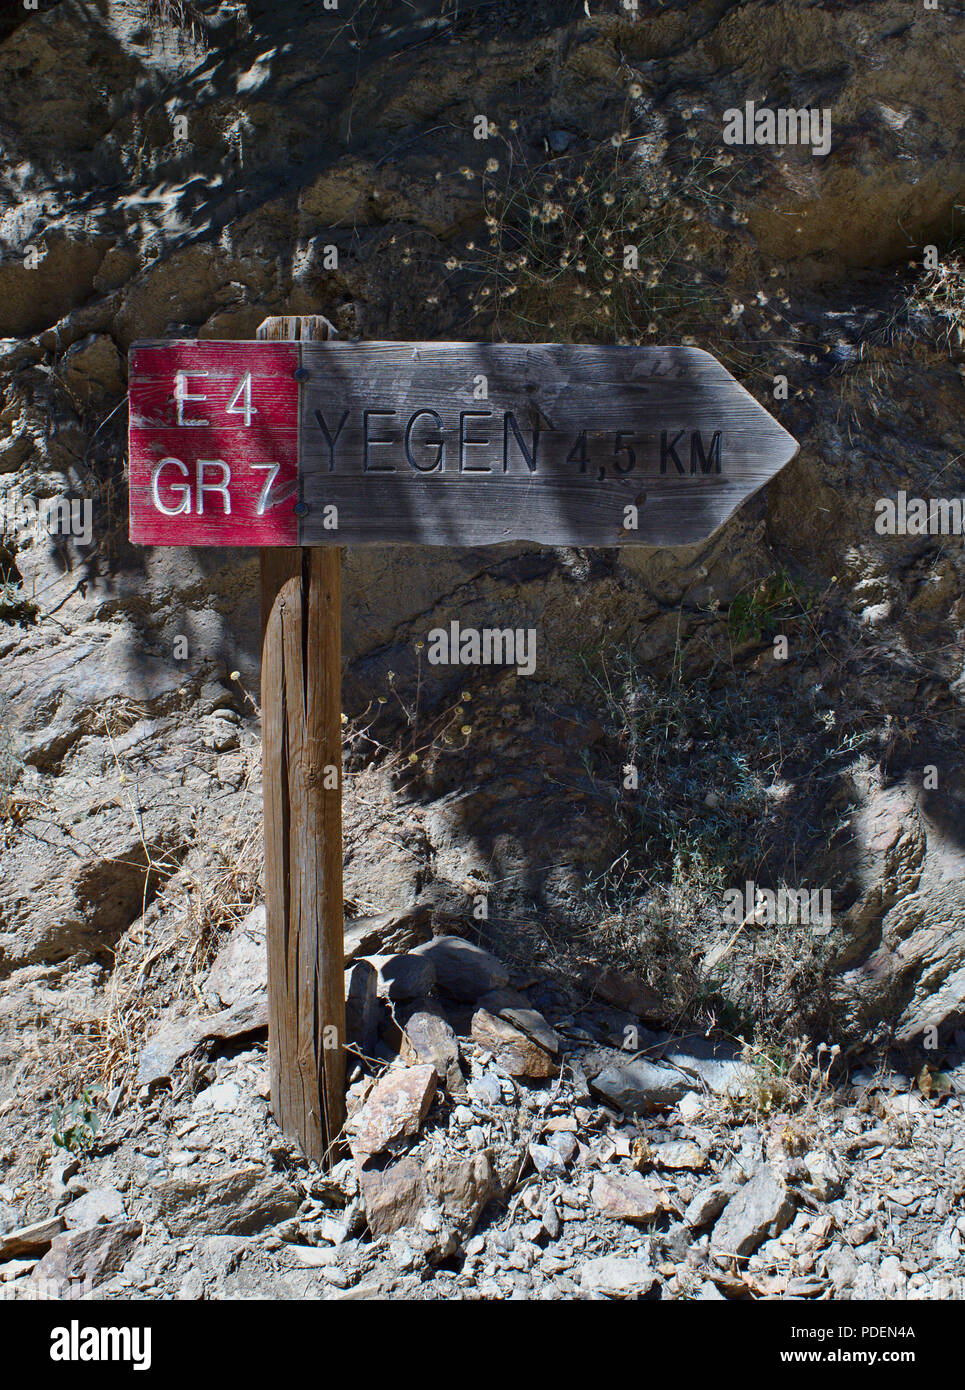 Une enseigne sur le fameux GR7 sentier qui est 1900km de long et s'étend du sud de l'Espagne à la France. Banque D'Images